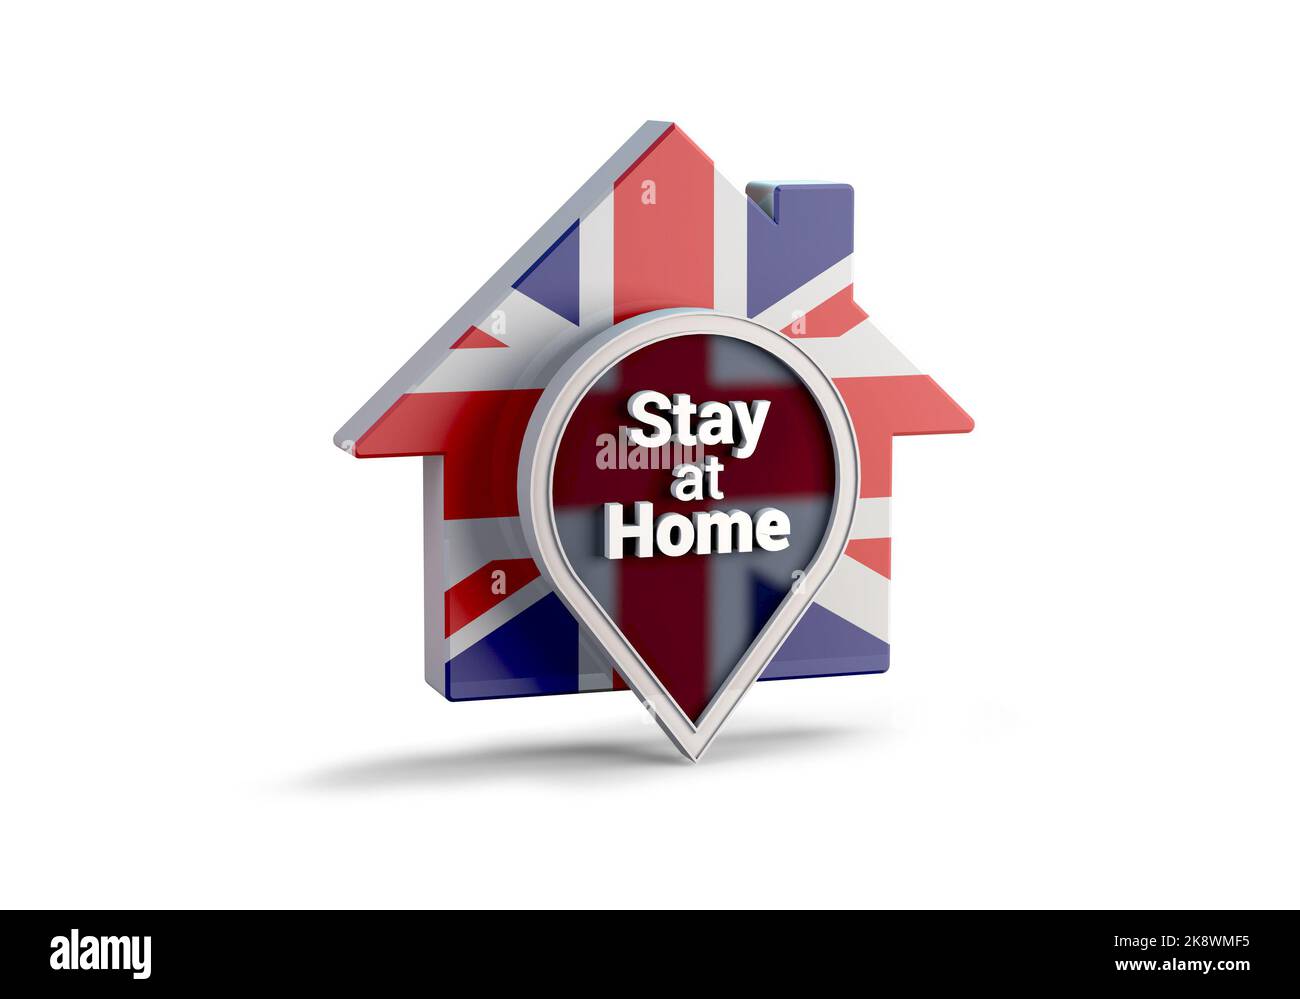 Eine Illustration von 3D eines Hauses mit der Flagge des Vereinigten Königreichs mit der Phrase Stay at Home, Protect from Coronavirus or Covid-19 Epidemien. Stockfoto